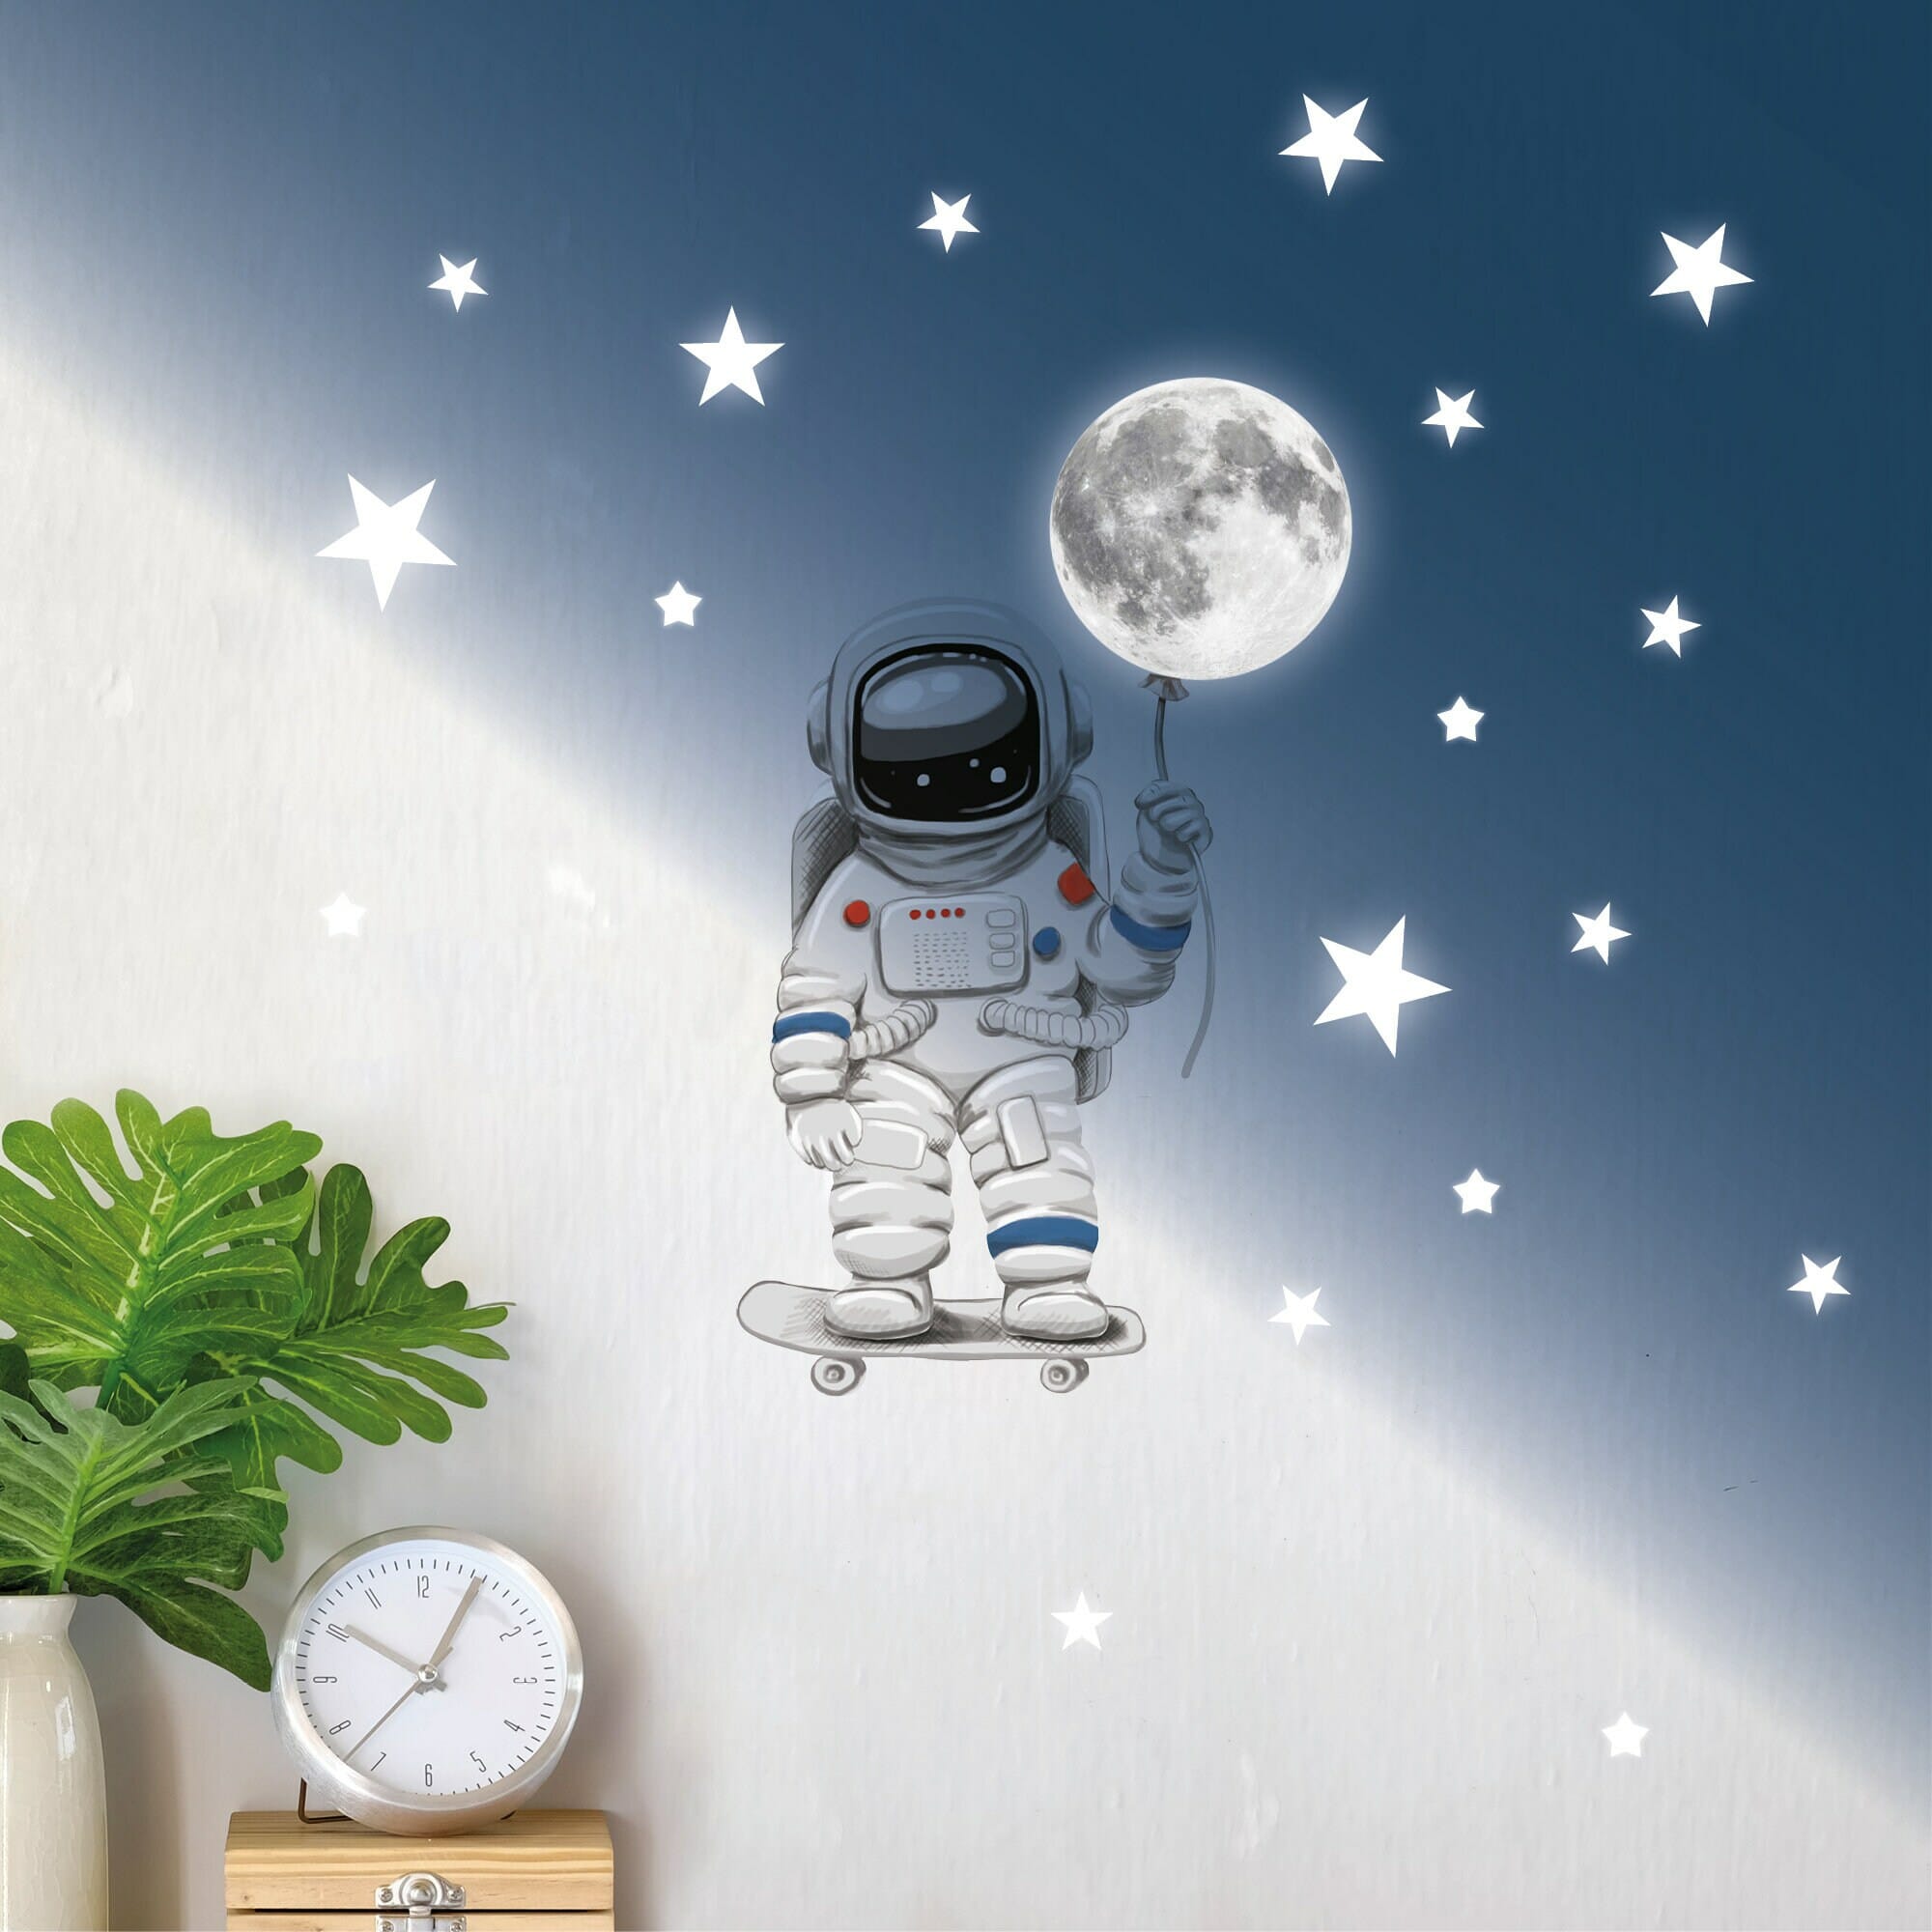 Leuchtaufkleber Astronaut Skater Mond Weltall, leuchtend und fluoreszierende Sterne, leuchten im Dunklen